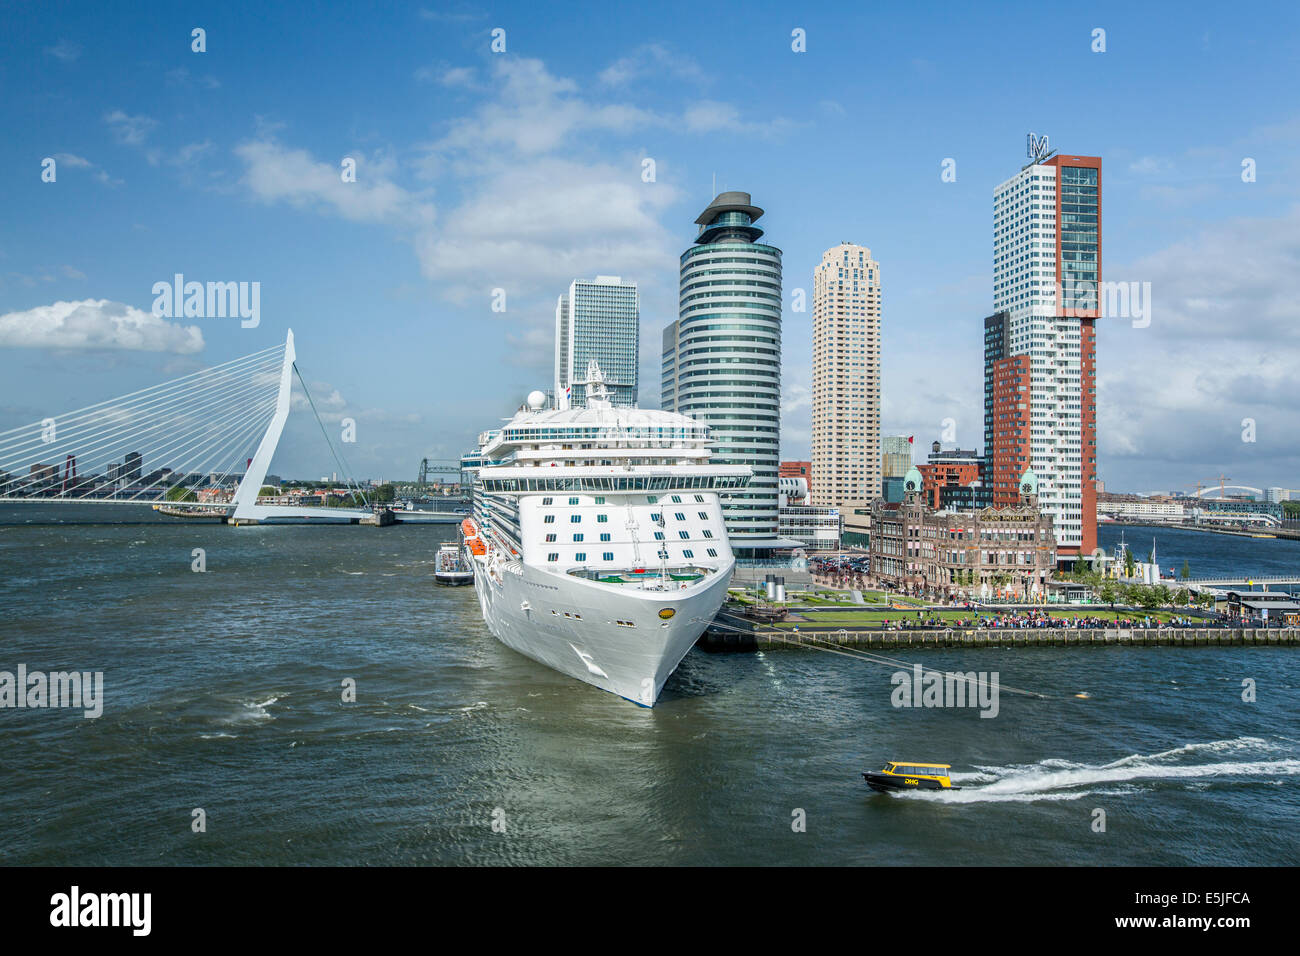 Niederlande, Rotterdam, Kop van Zuid Viertel. Kreuzfahrtschiff Ocean Princess. Hotel New York, Holland America Line. Erasmus-Brücke Stockfoto